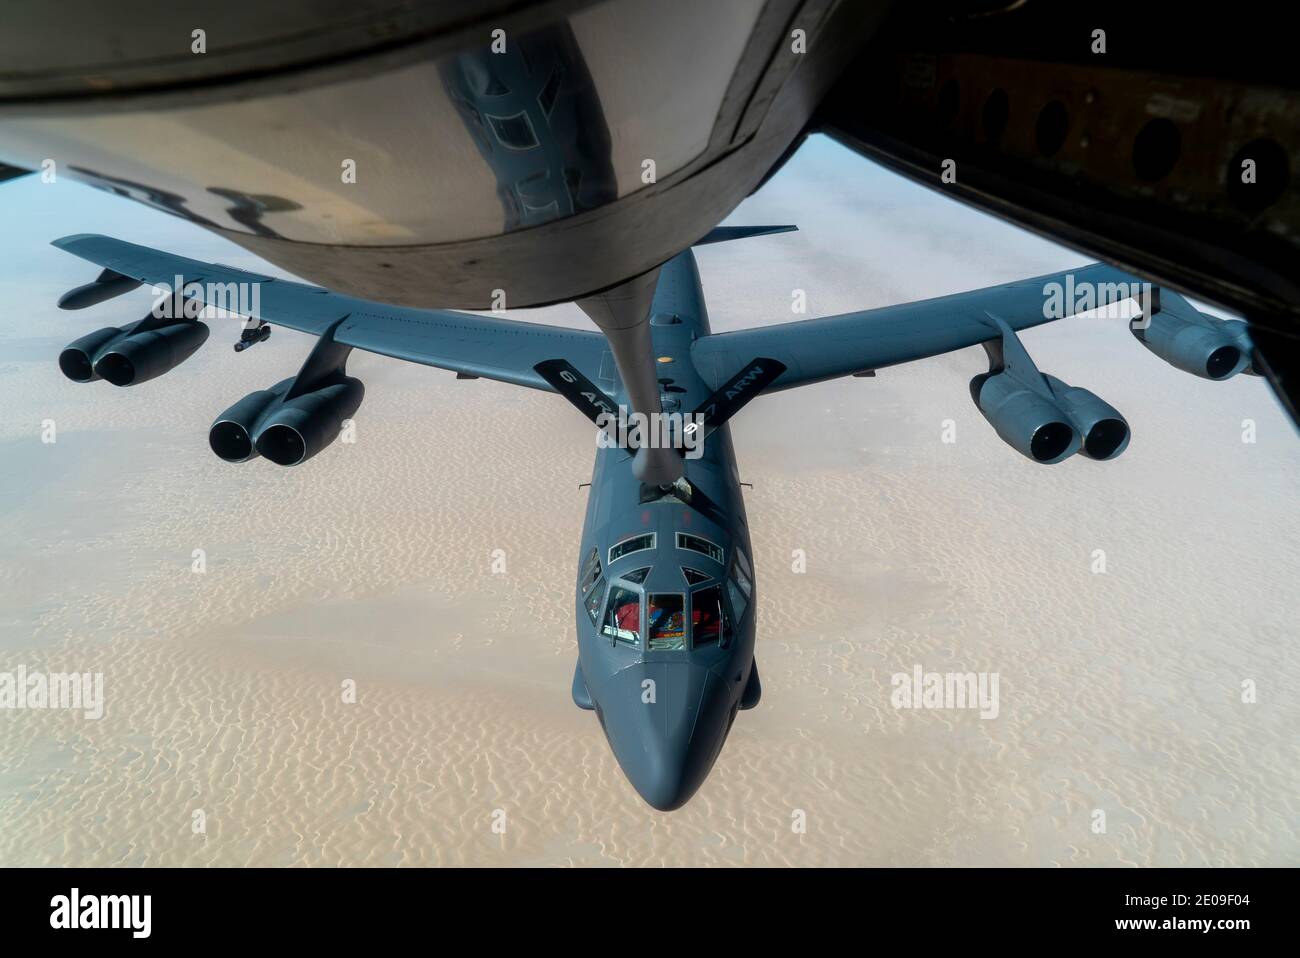 Persischer Golf, Vereinigte Staaten. Dezember 2020. Ein strategisches Bomberflugzeug der US Air Force B-52 Stratofortress vom 5. Bombenflügel nähert sich einem KC-135 Stratotanker für die Betankung am 30. Dezember 2020 über dem Persischen Golf. Der Bomber ist die dritte solche Show der Force Mission als eine Botschaft an den Iran. Quelle: Planetpix/Alamy Live News Stockfoto